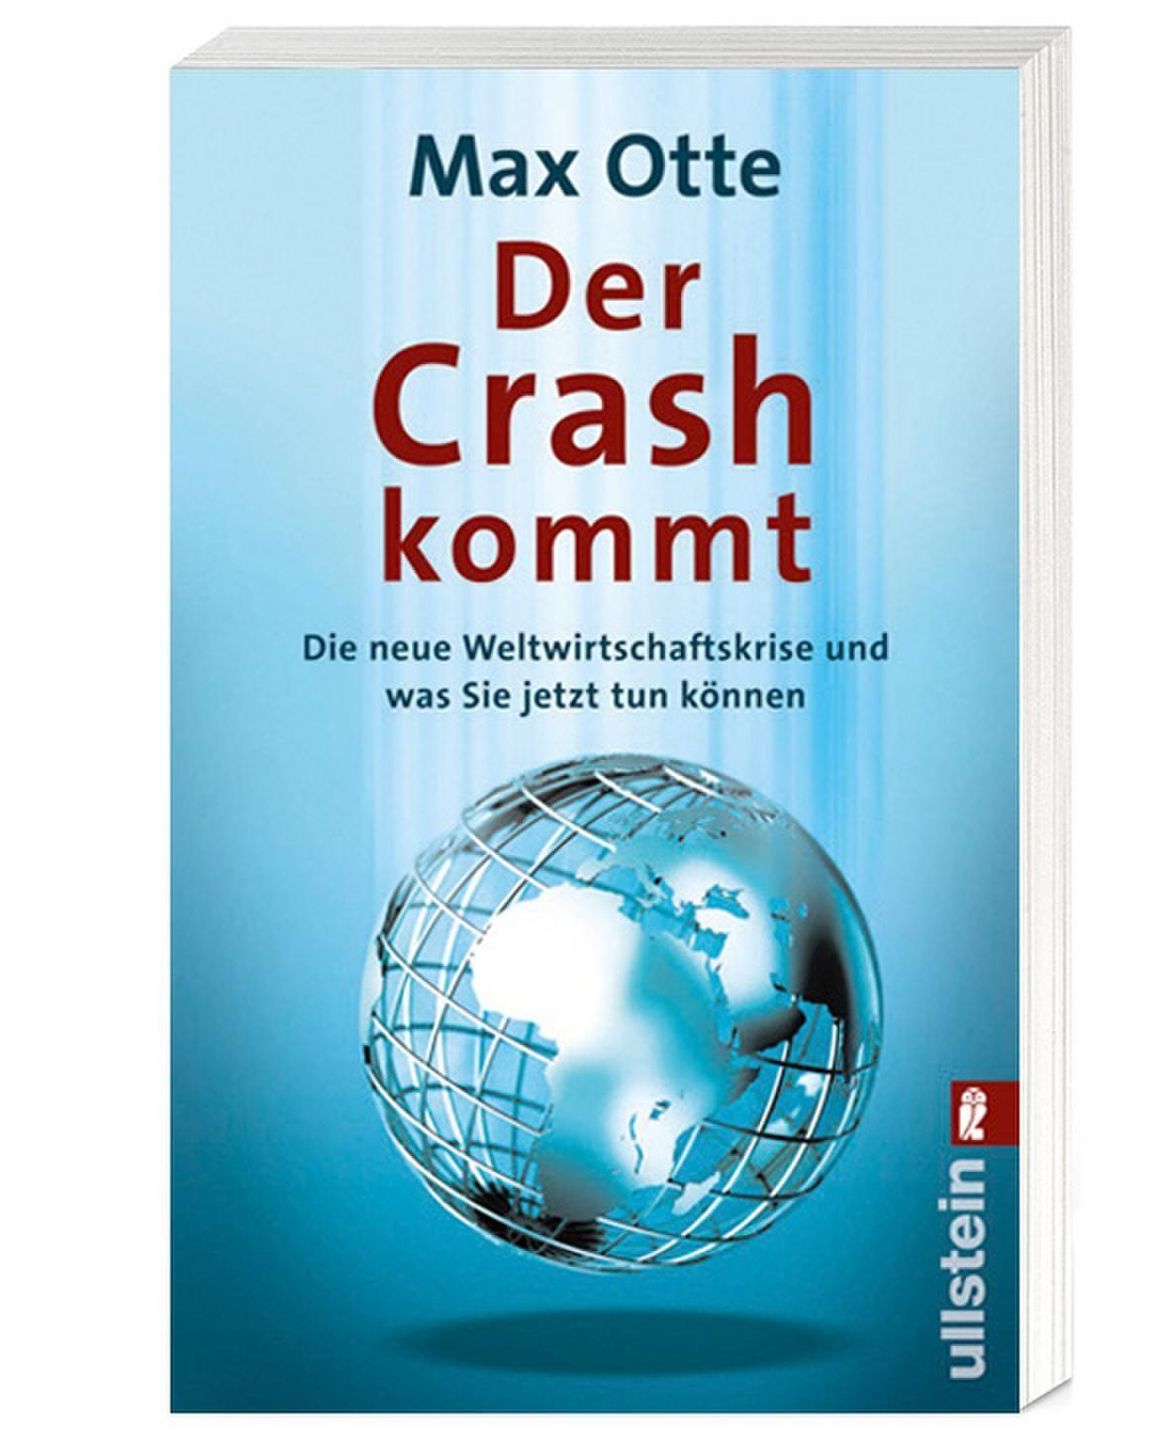 Der Crash kommt Buch von Max Otte versandkostenfrei bei Weltbild.de